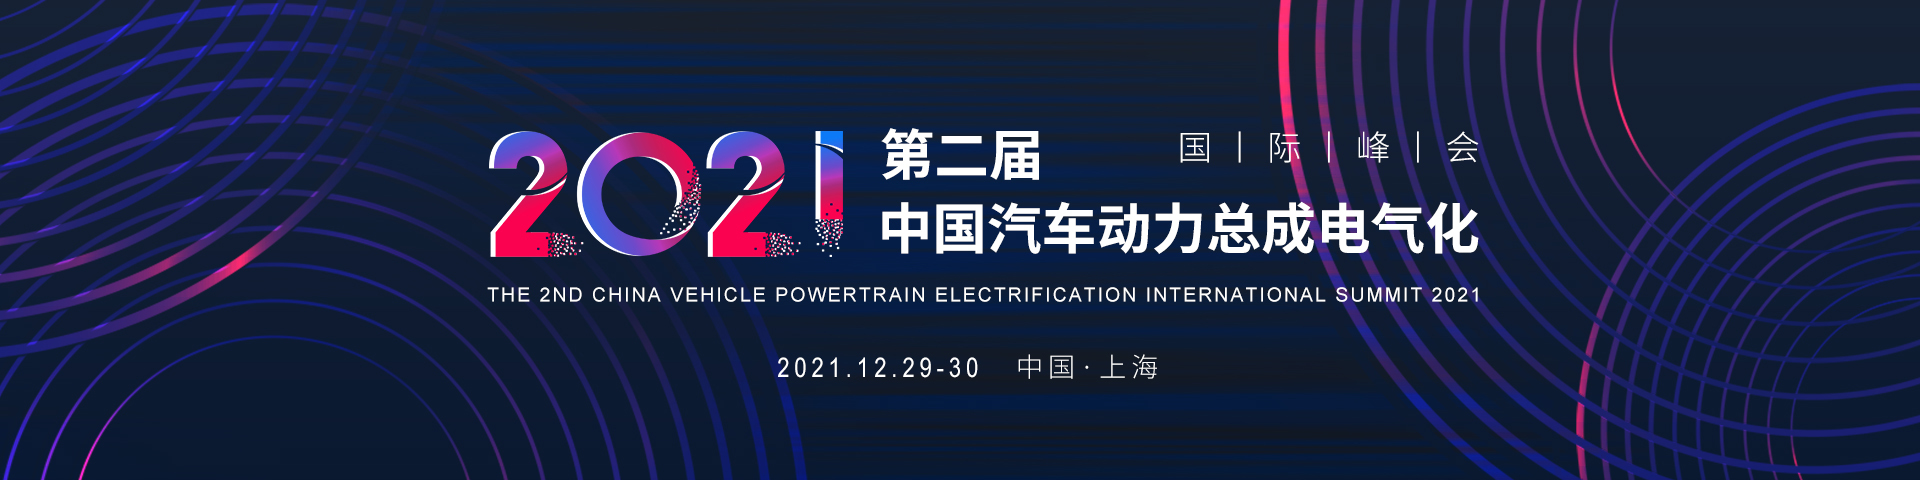 盖世汽车2021第二届中国汽车动力总成电气化国际峰会